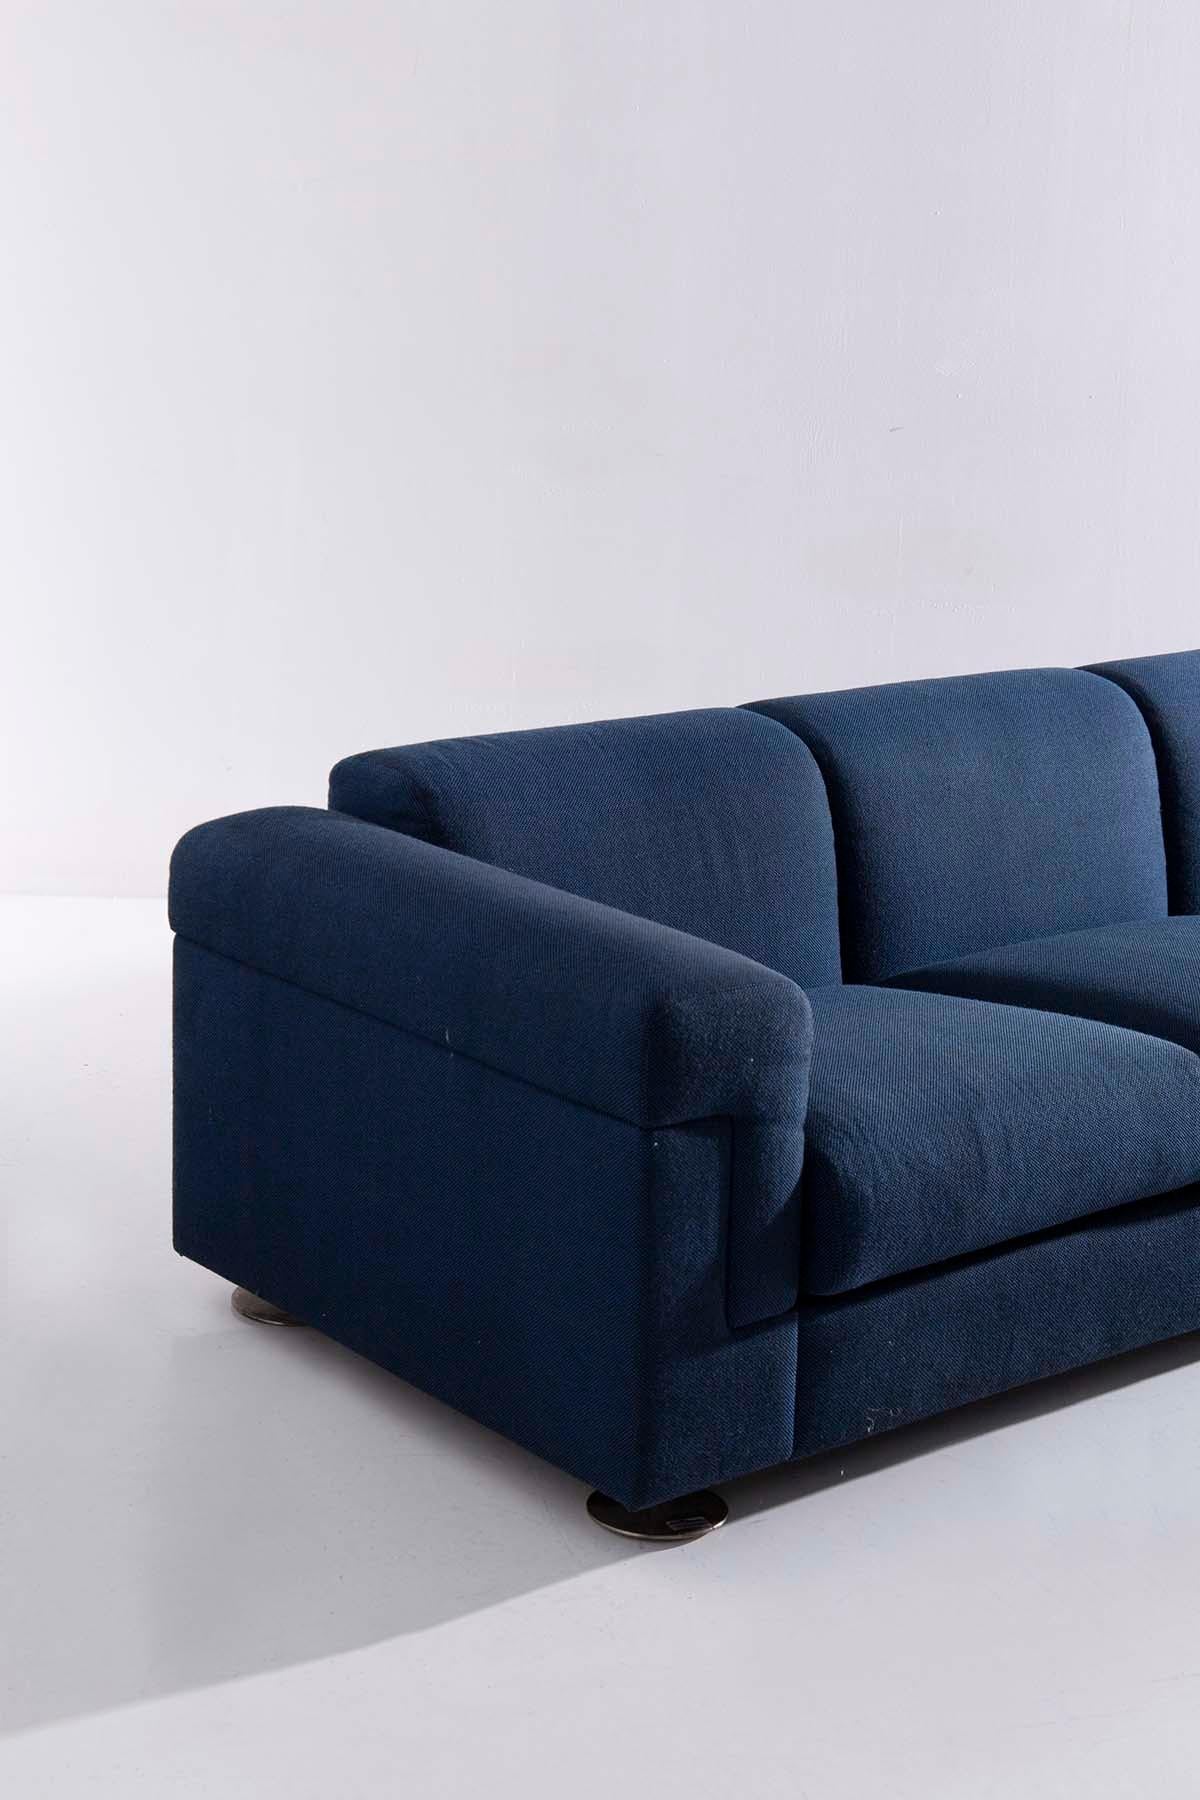 Im fesselnden Jahr 1966 entstand im Herzen von Varedo ein zeitloses Meisterwerk: das Sofa Modell D120, ein authentisches Kunstwerk, das dem Genie von Valeria Borsani und Alfredo Bonetti entsprungen ist. Dieses außergewöhnliche Design hat die Herzen